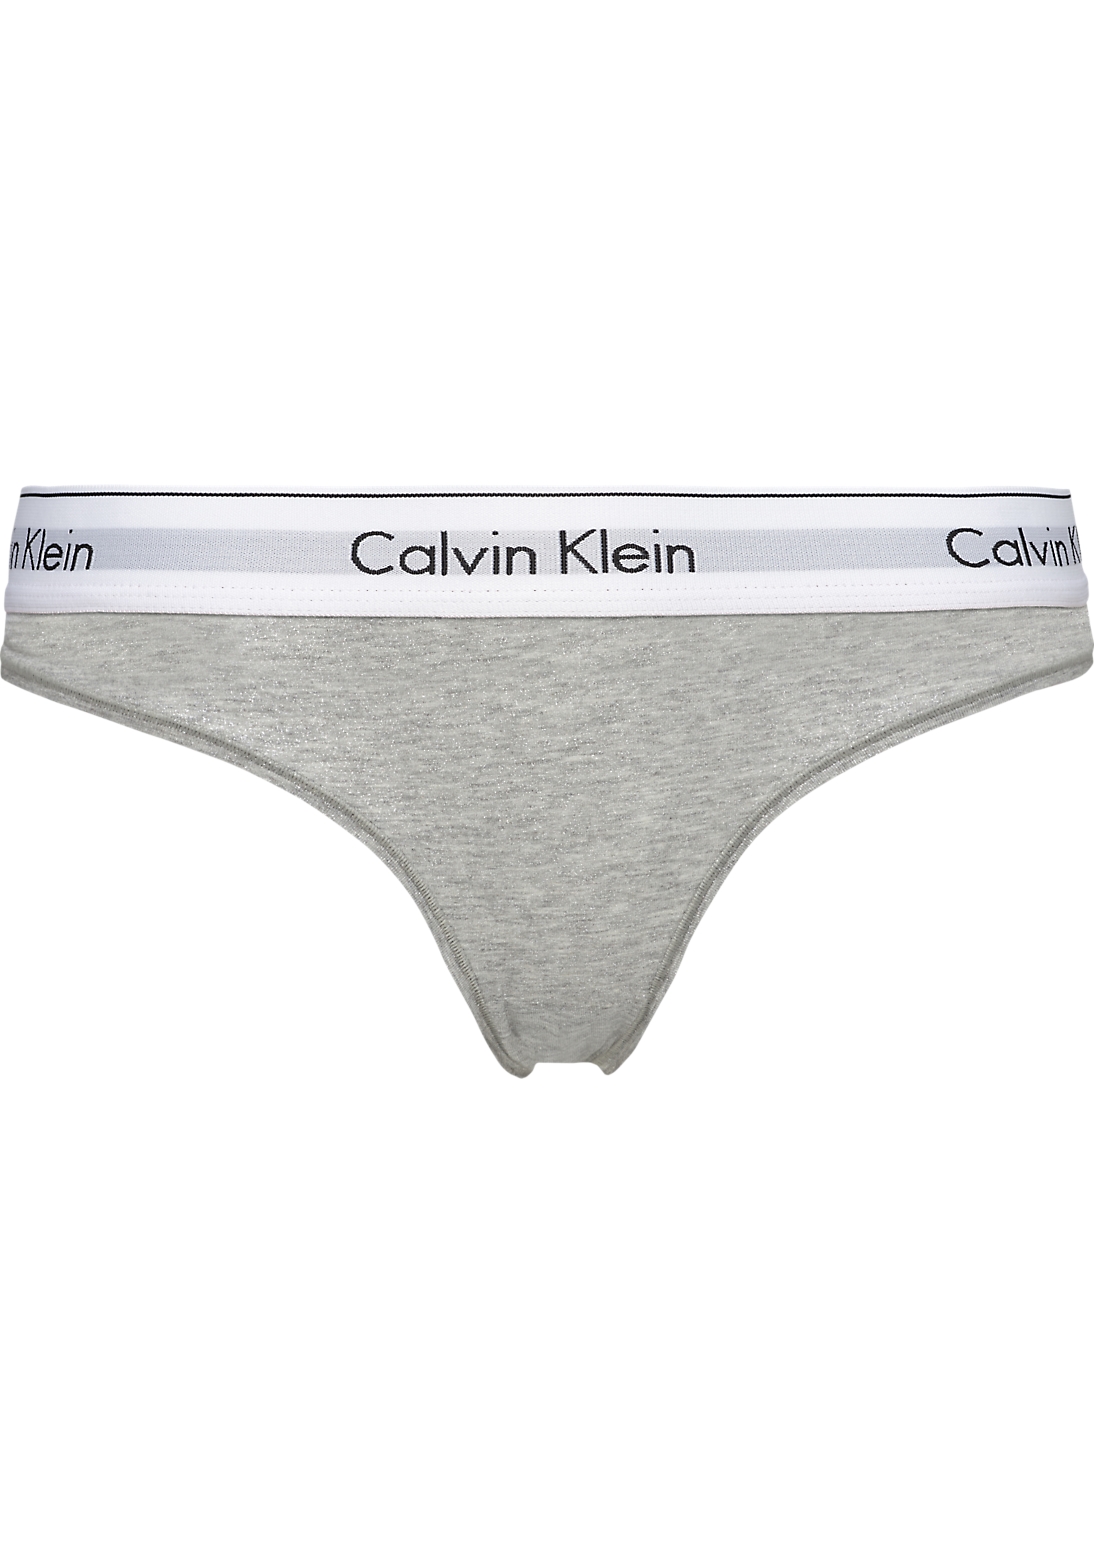 Calvin Klein dames Modern Cotton slip, grijs